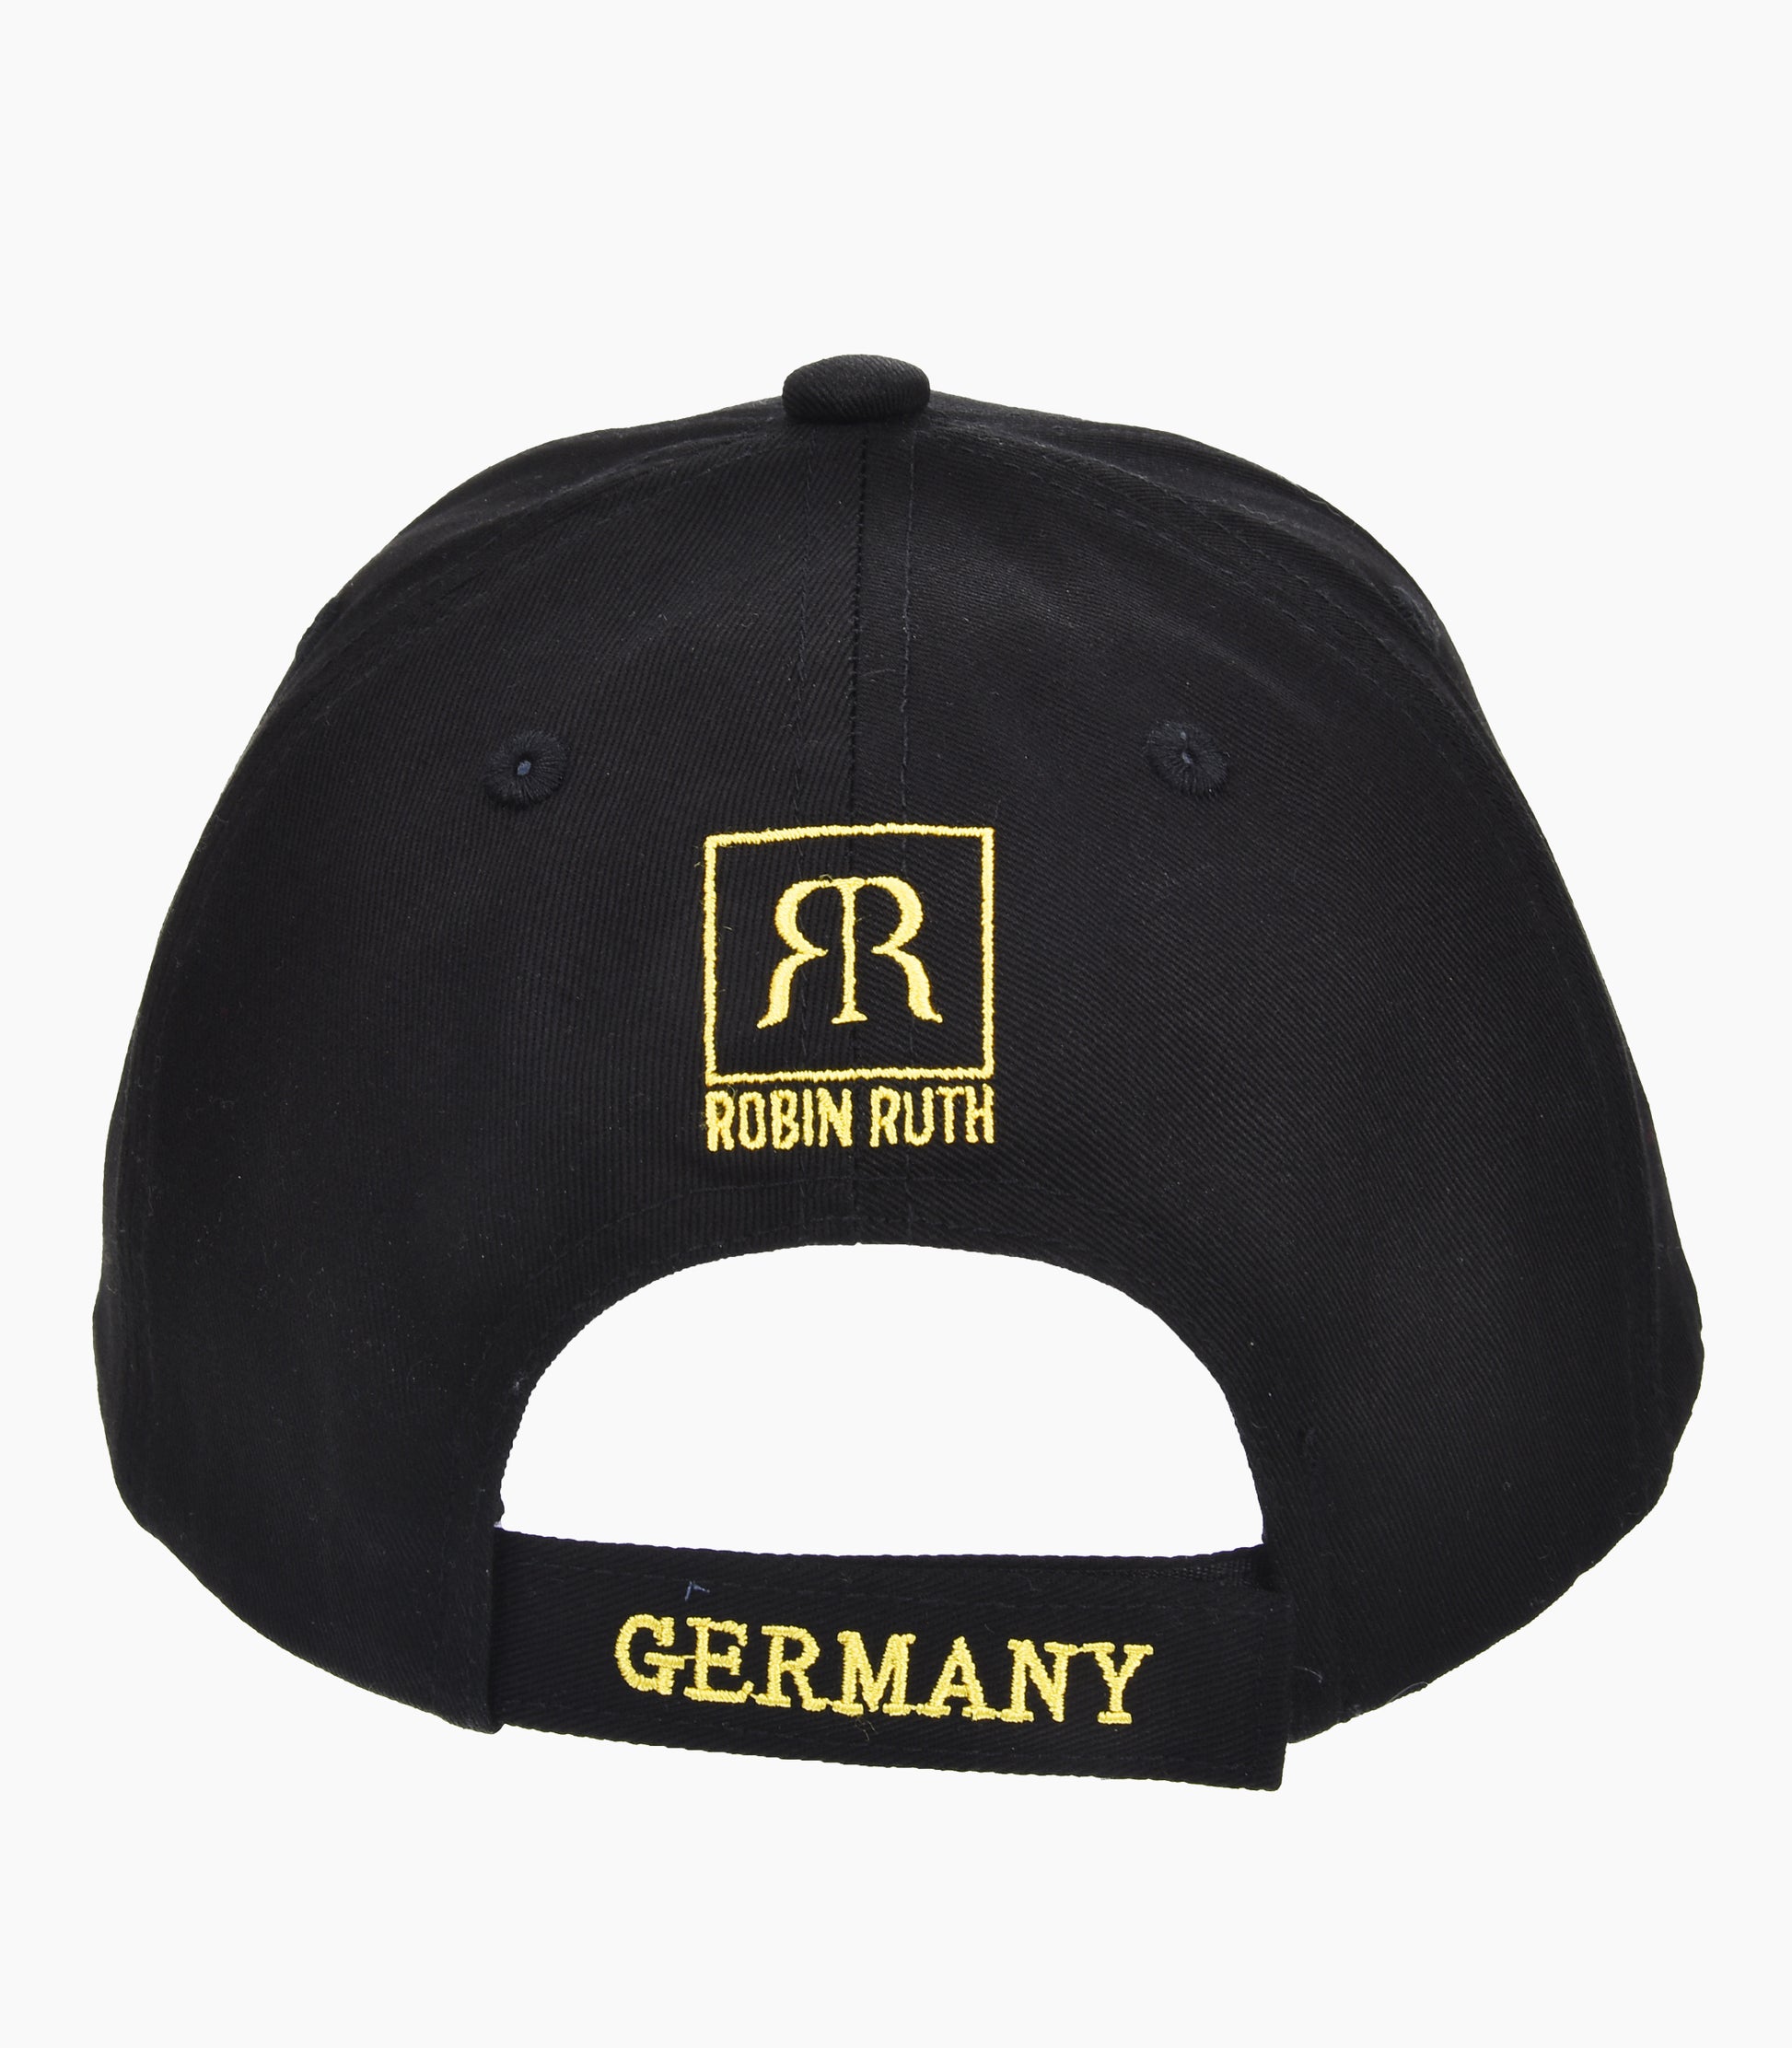 Germany Cap - Robin Ruth